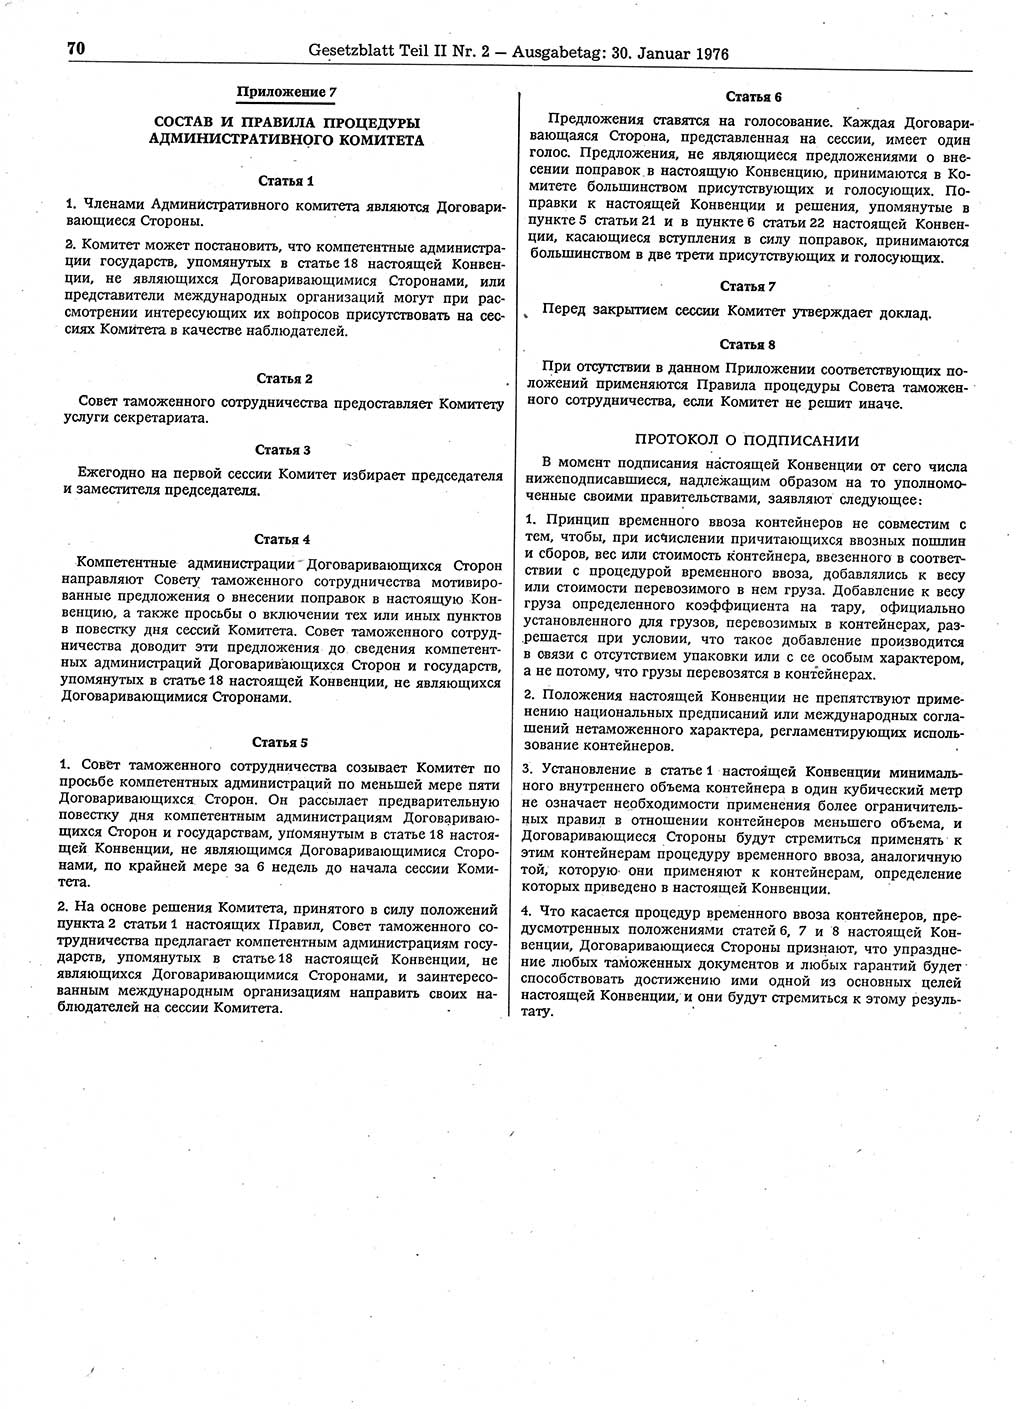 Gesetzblatt (GBl.) der Deutschen Demokratischen Republik (DDR) Teil ⅠⅠ 1976, Seite 70 (GBl. DDR ⅠⅠ 1976, S. 70)